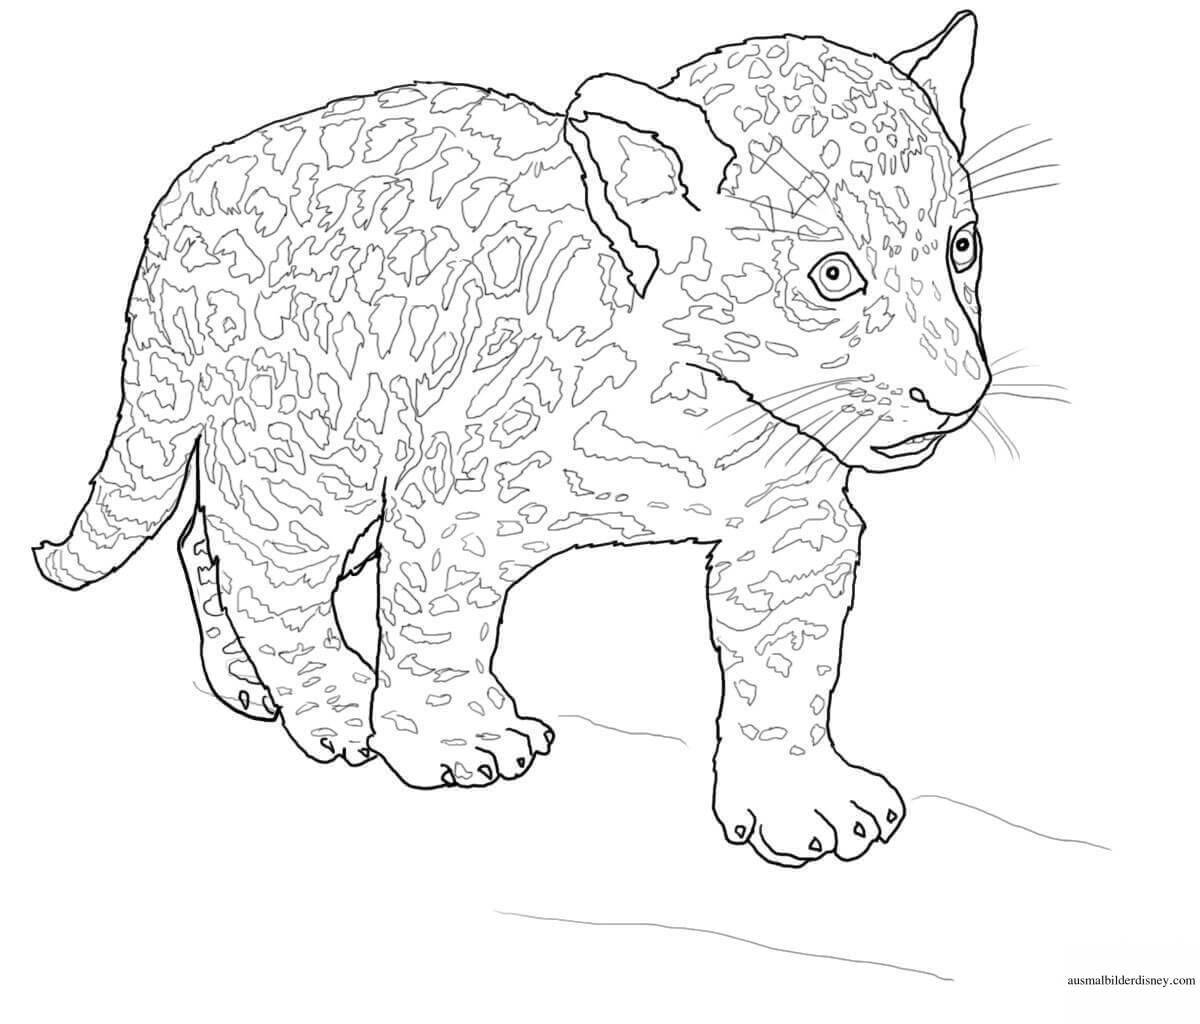 Playful jaguar coloring page for kids